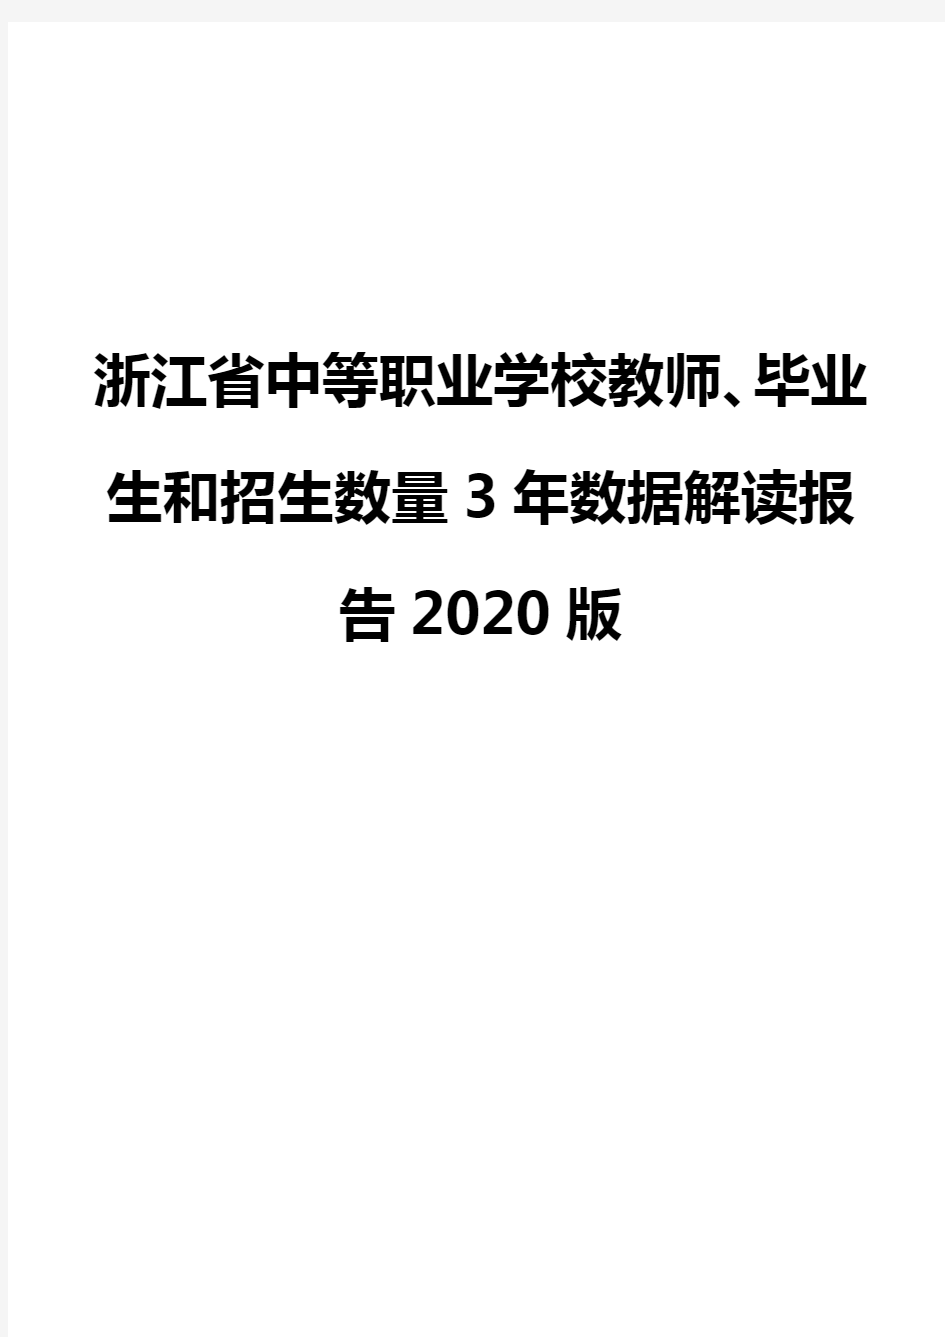 浙江省中等职业学校教师、毕业生和招生数量3年数据解读报告2020版